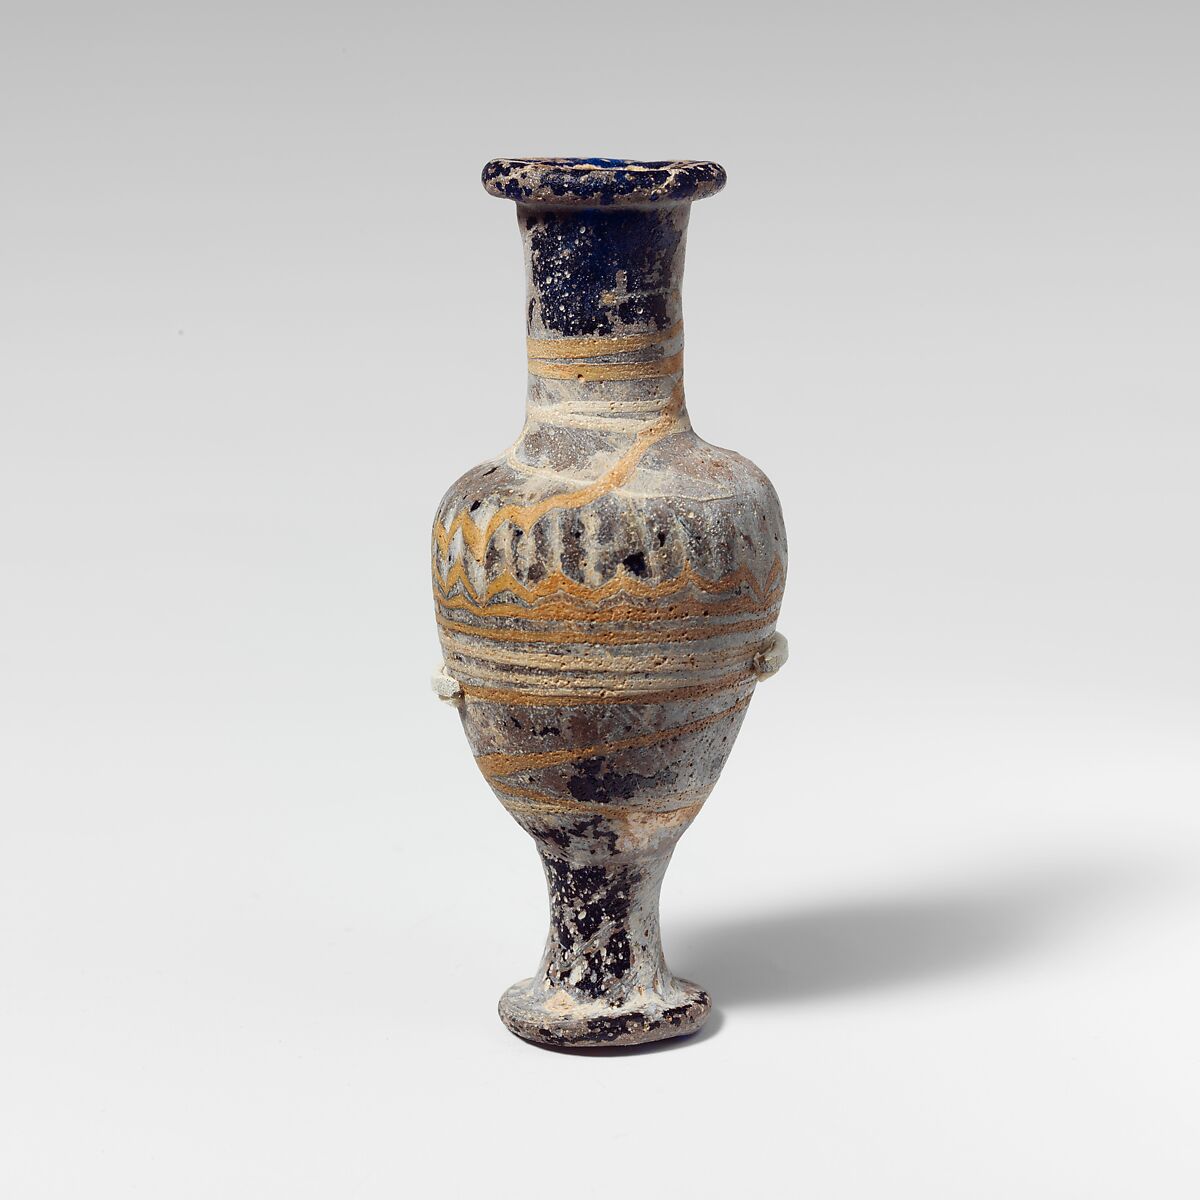 Glass unguentarium (perfume bottle), Glass, Greek, Eastern Mediterranean